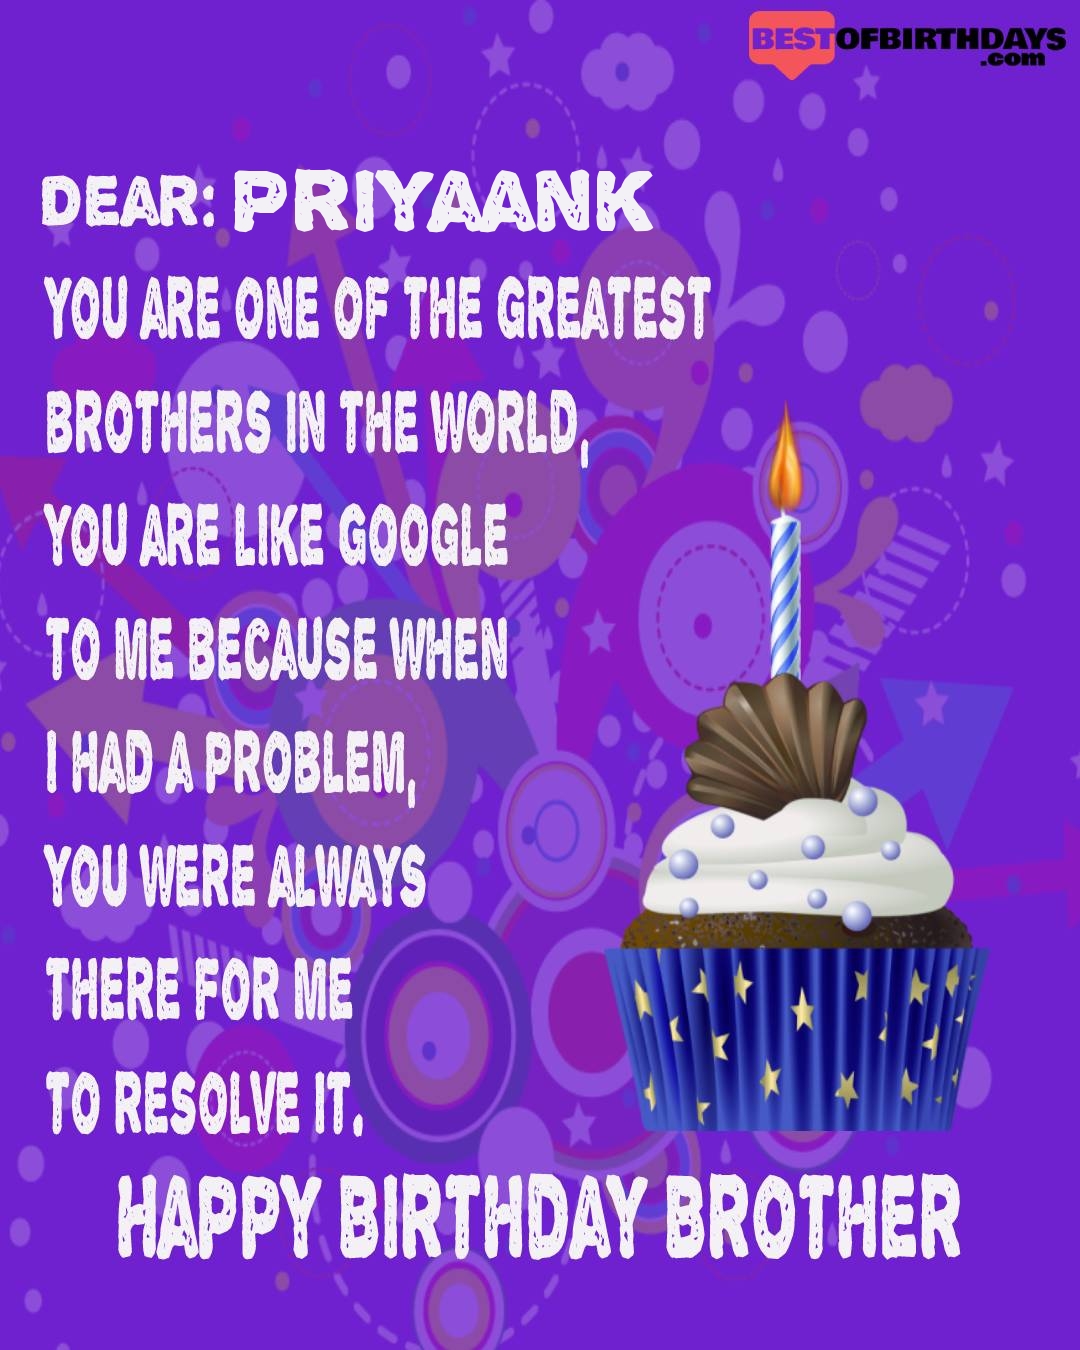 Happy birthday priyaank bhai brother bro